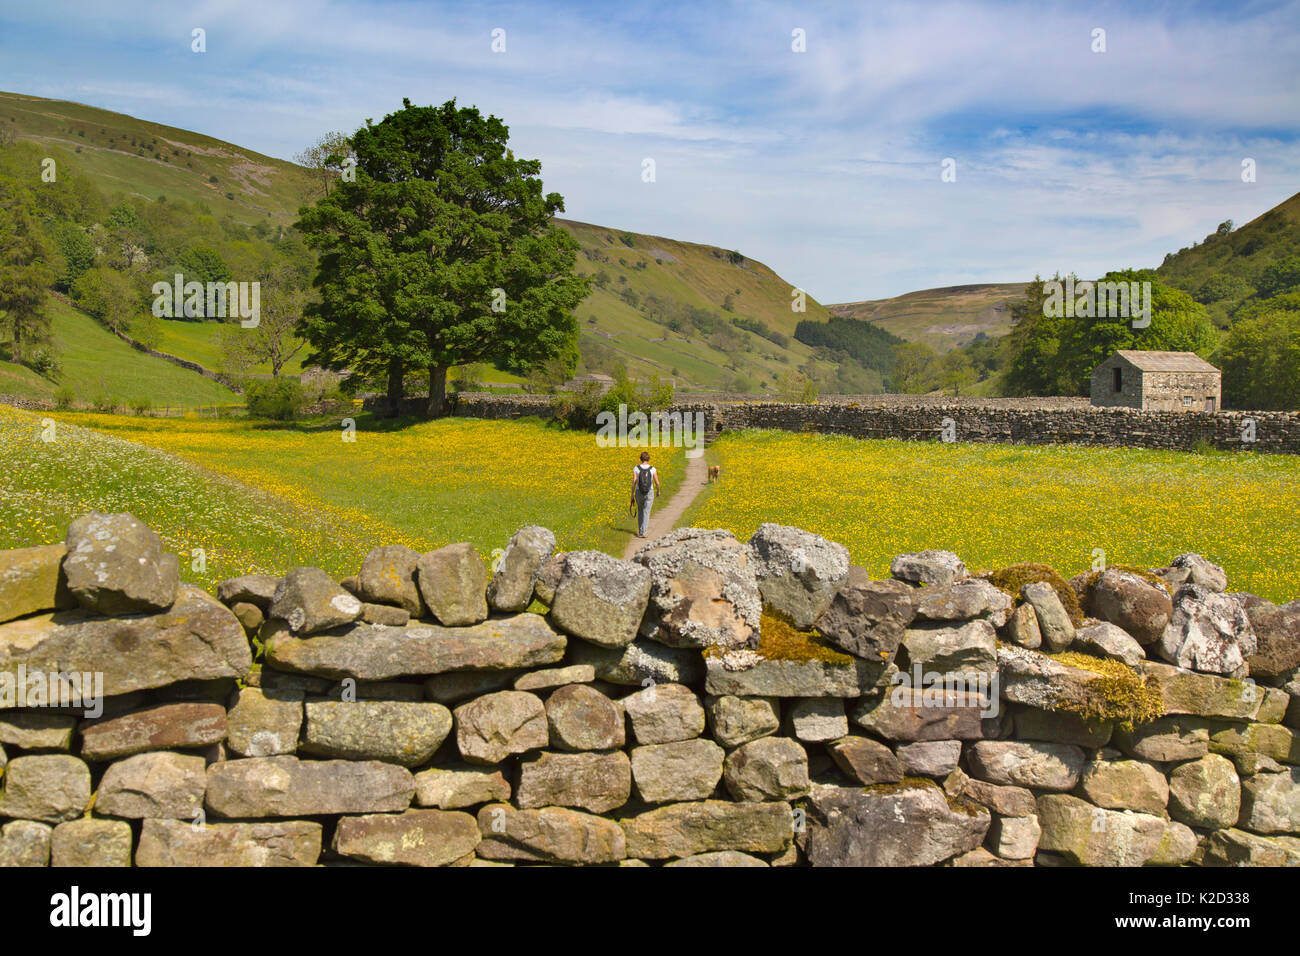 Il fieno dei prati e fienili in campo con renoncules e muri in pietra a secco, Swaledale, vicino al villaggio di Muker Yorkshire, Inghilterra, Regno Unito, Giugno 2015. Foto Stock